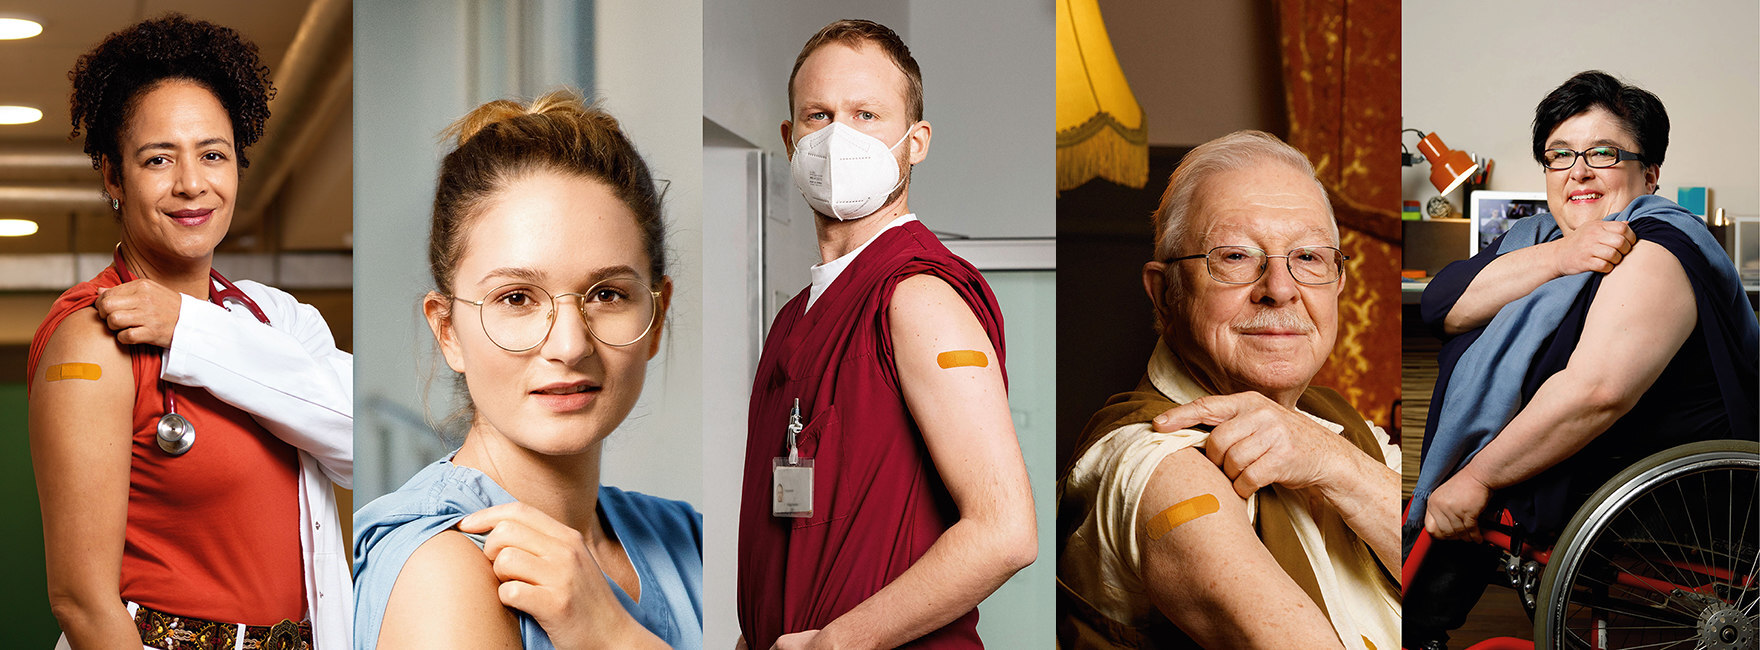 Collage aus 5 Fotos von Menschen, die einen hochgekrempelten Oberarm zeigen, zum Teil mit Pflaster.